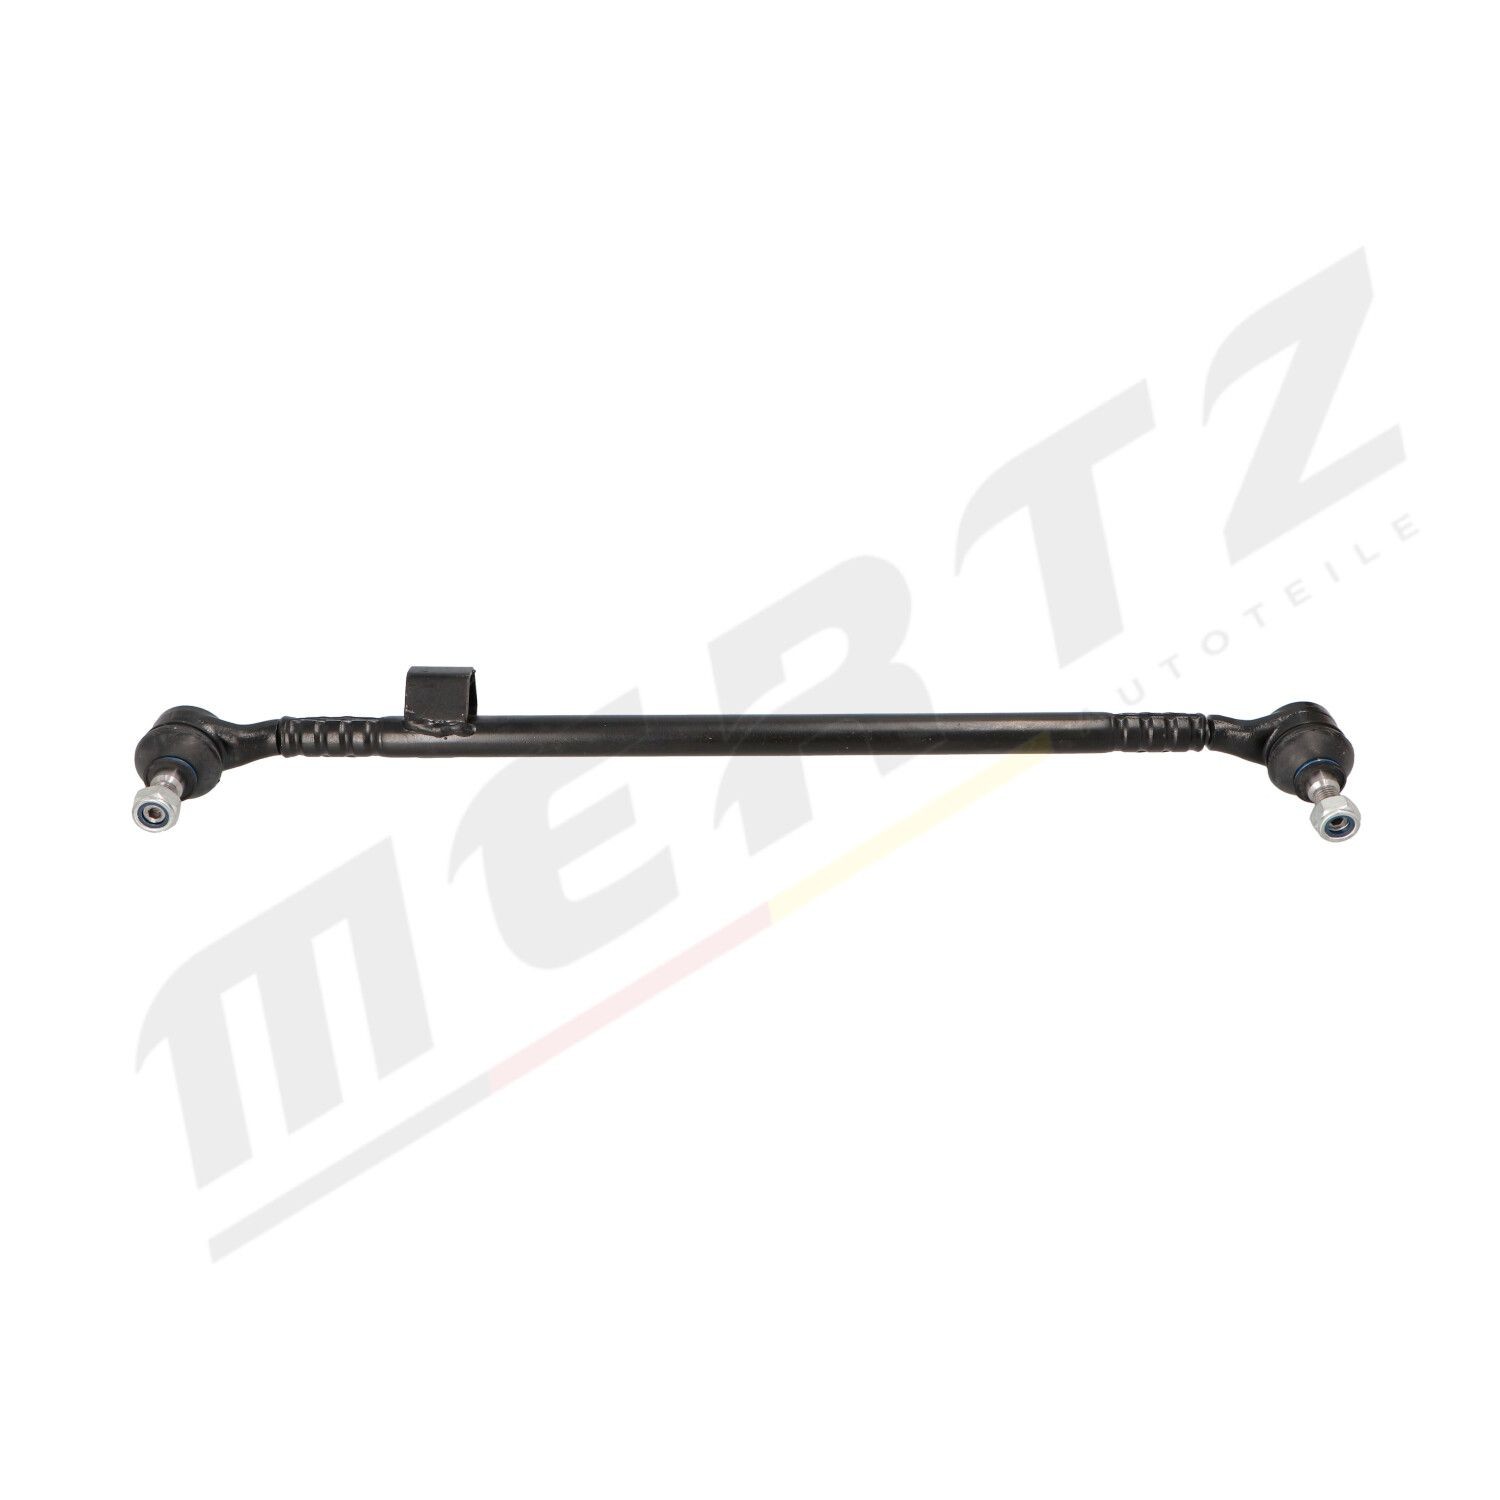 MERTZ M-S1065 Rod Assembly A 124 460 1205